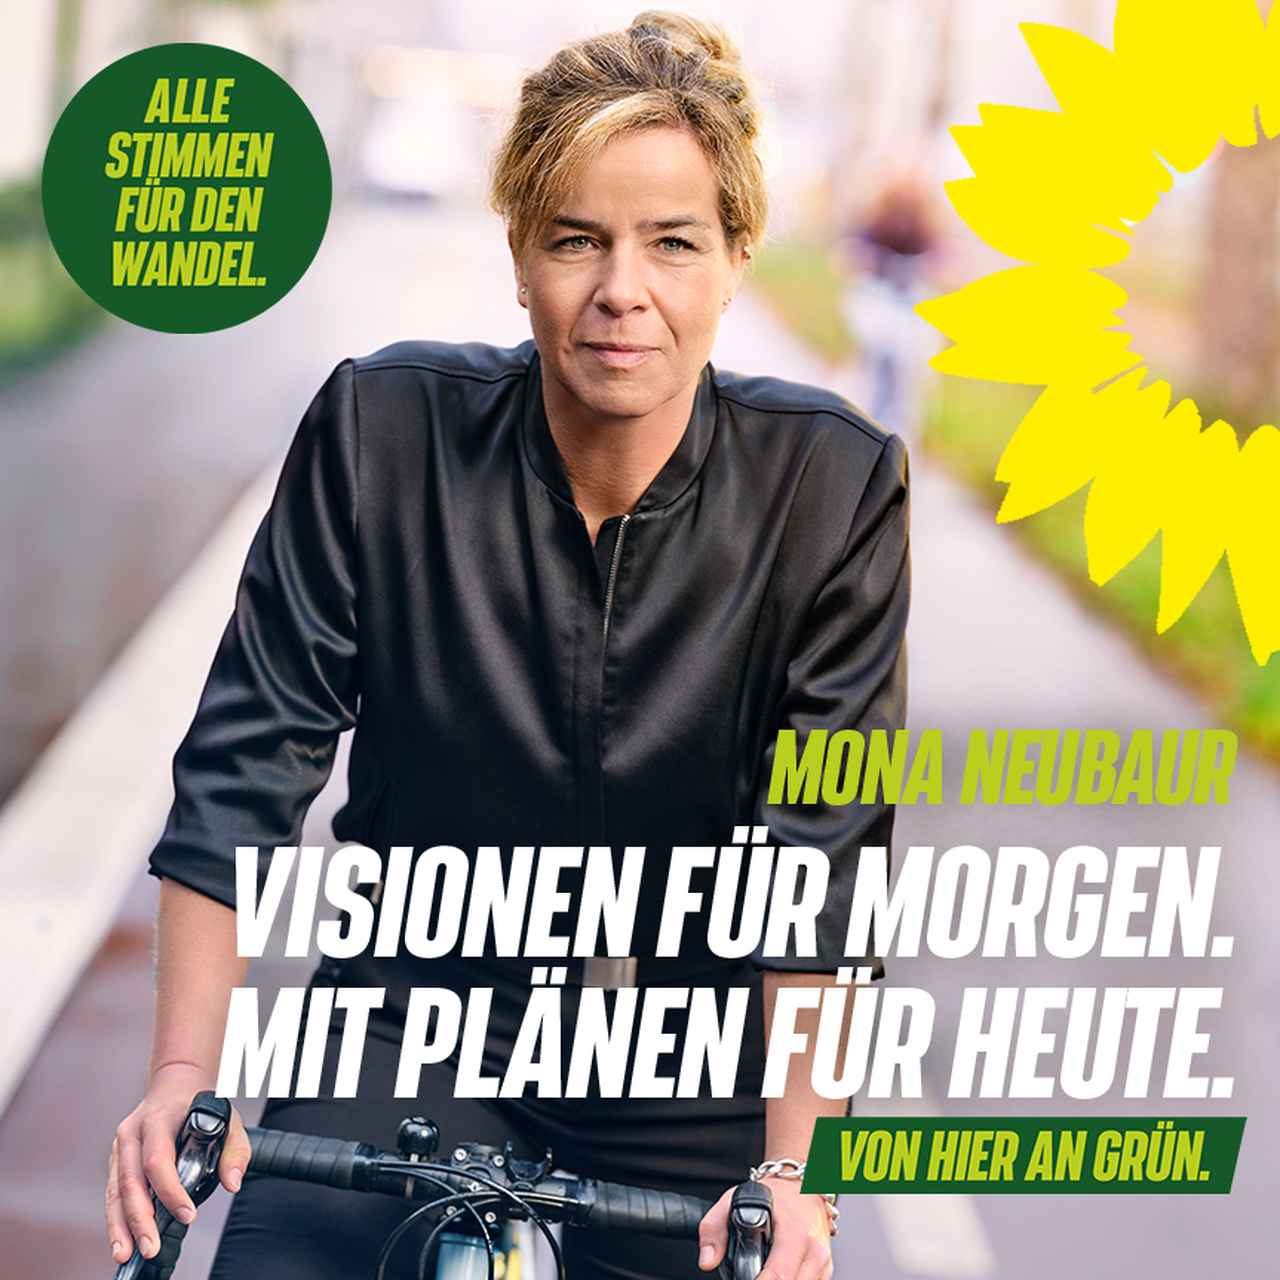 Mona Neubaur auf Rennrad - Text: Visionen für Morghen mit Plänen für Heute. Von hier an Grün. Alle Stimmen für den Wandel.